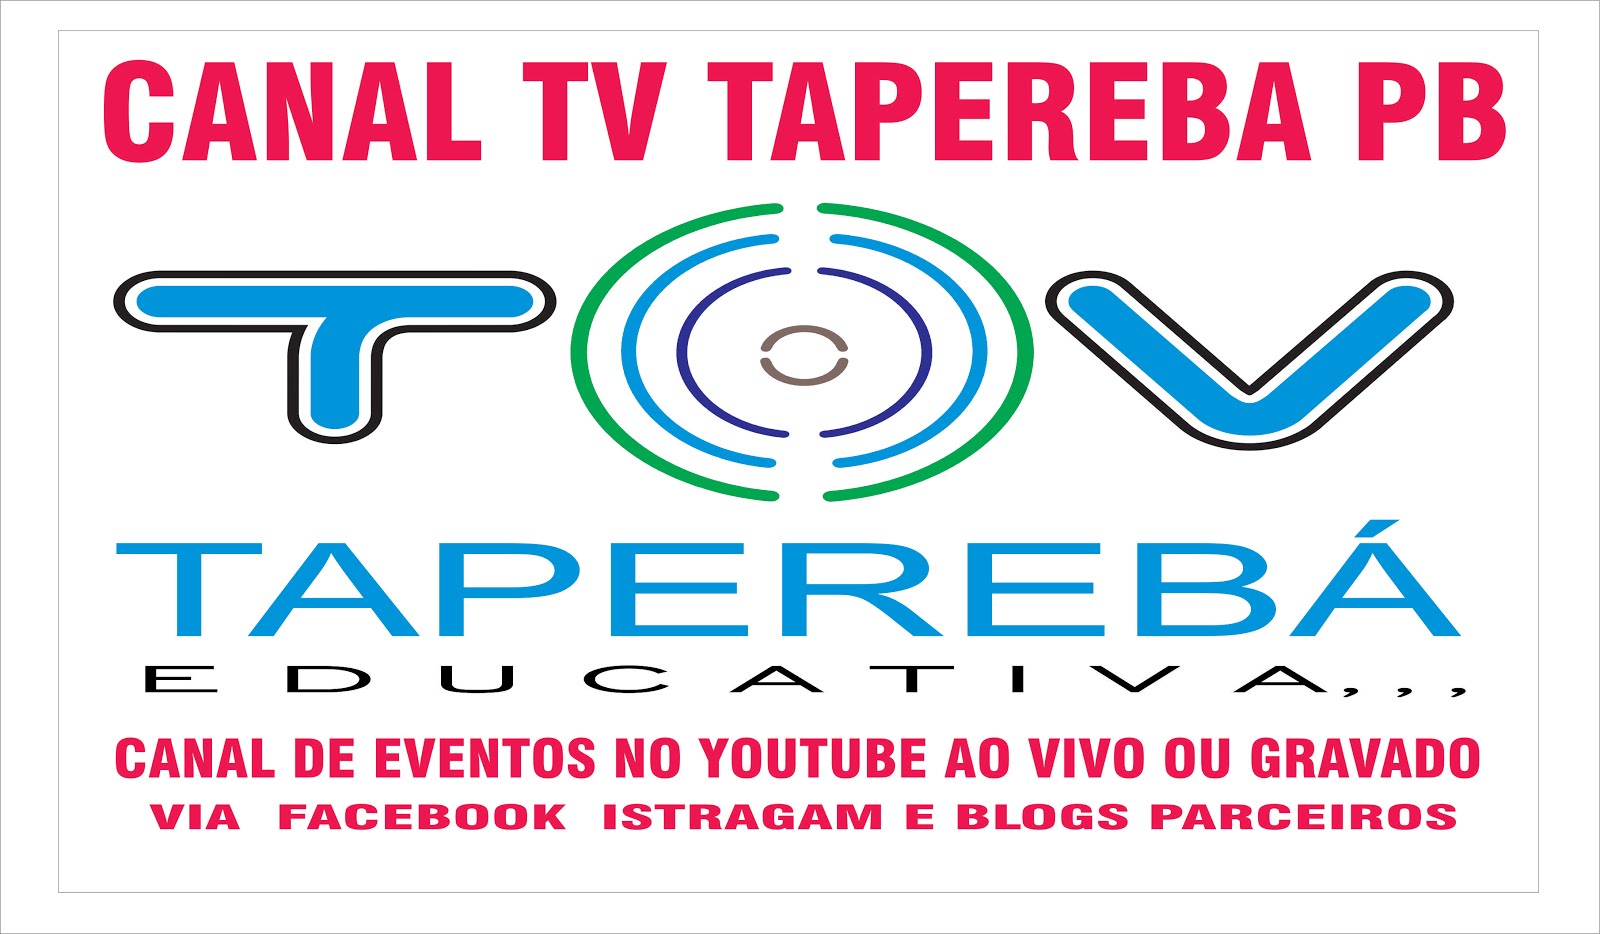 TV  TAPEREBA PB  CANAL DE EVENTOS  EDUCATIVO